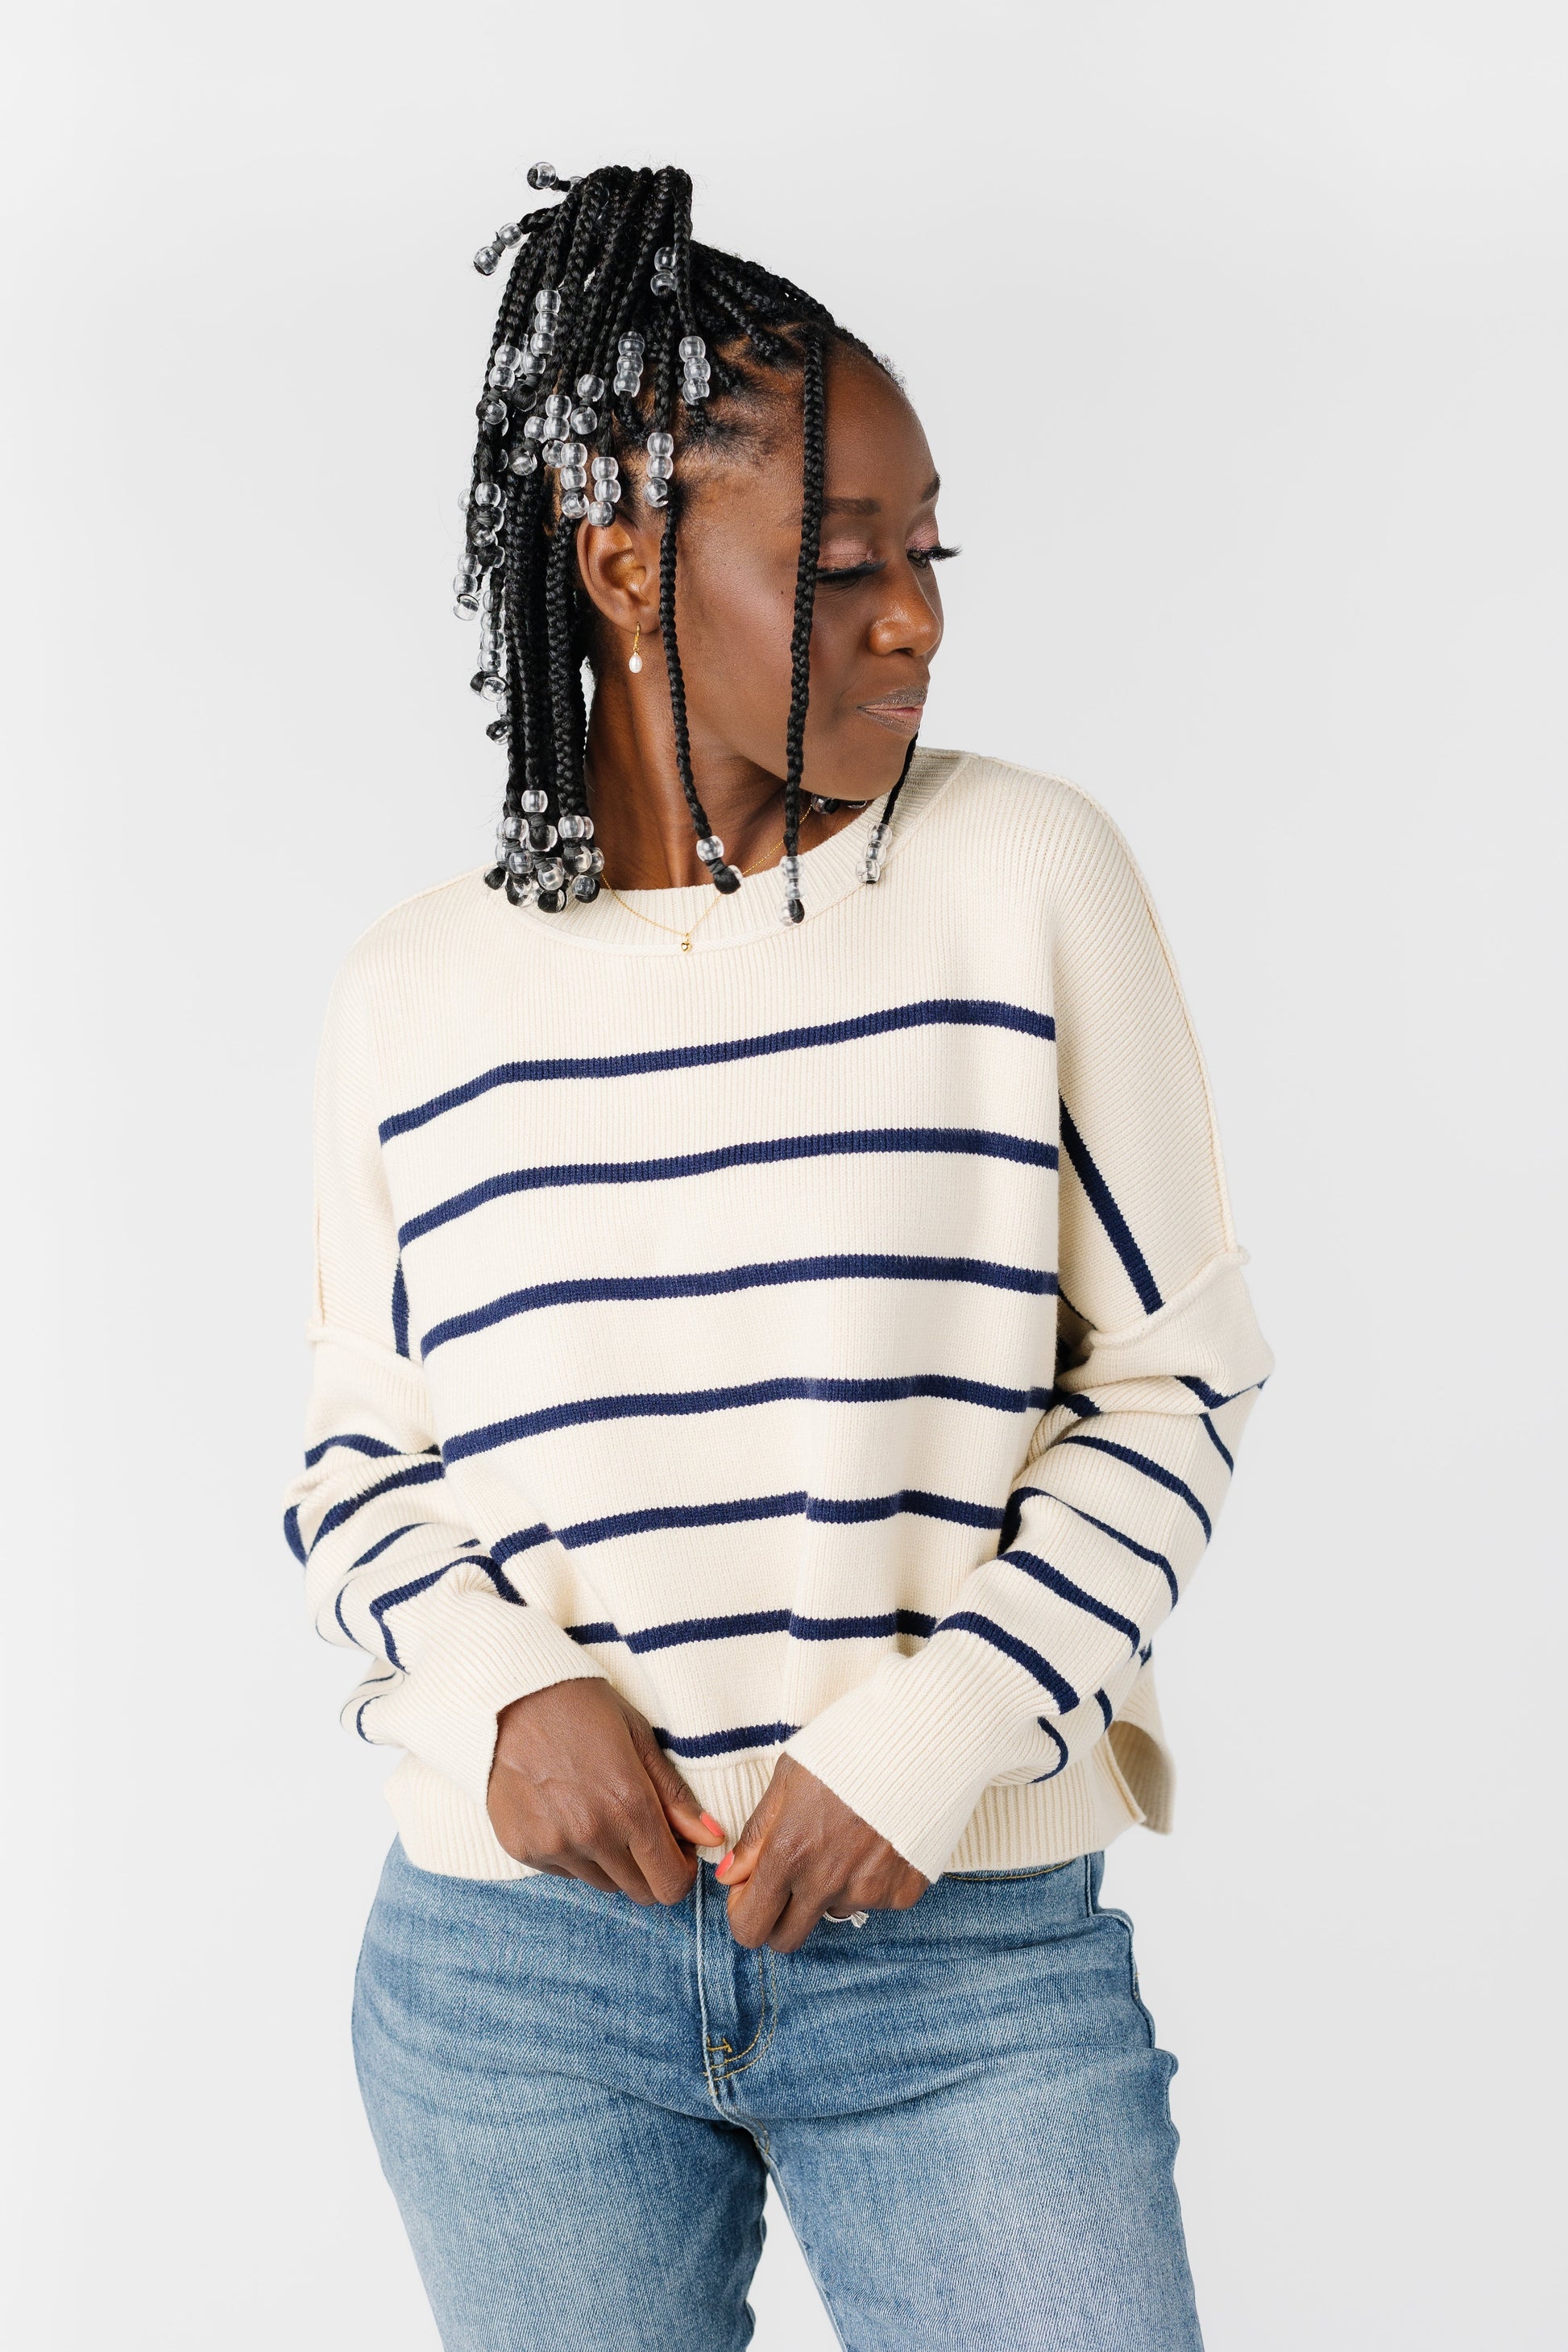 Savy Sweater - Cream/Navy WOMEN'S SWEATERS Wishlist 